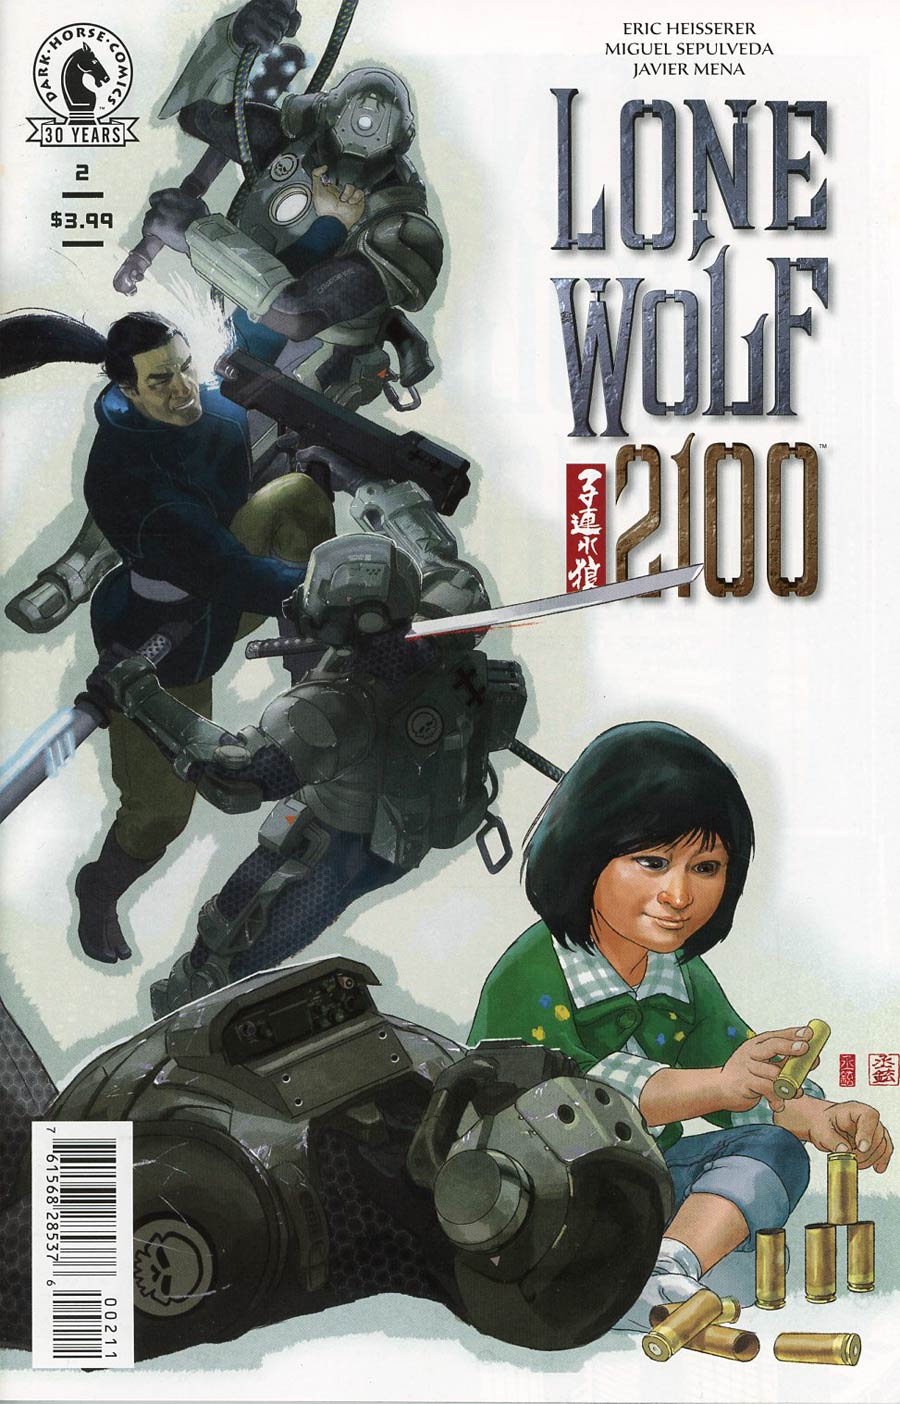 Lone Wolf 2100 Vol 2 #2